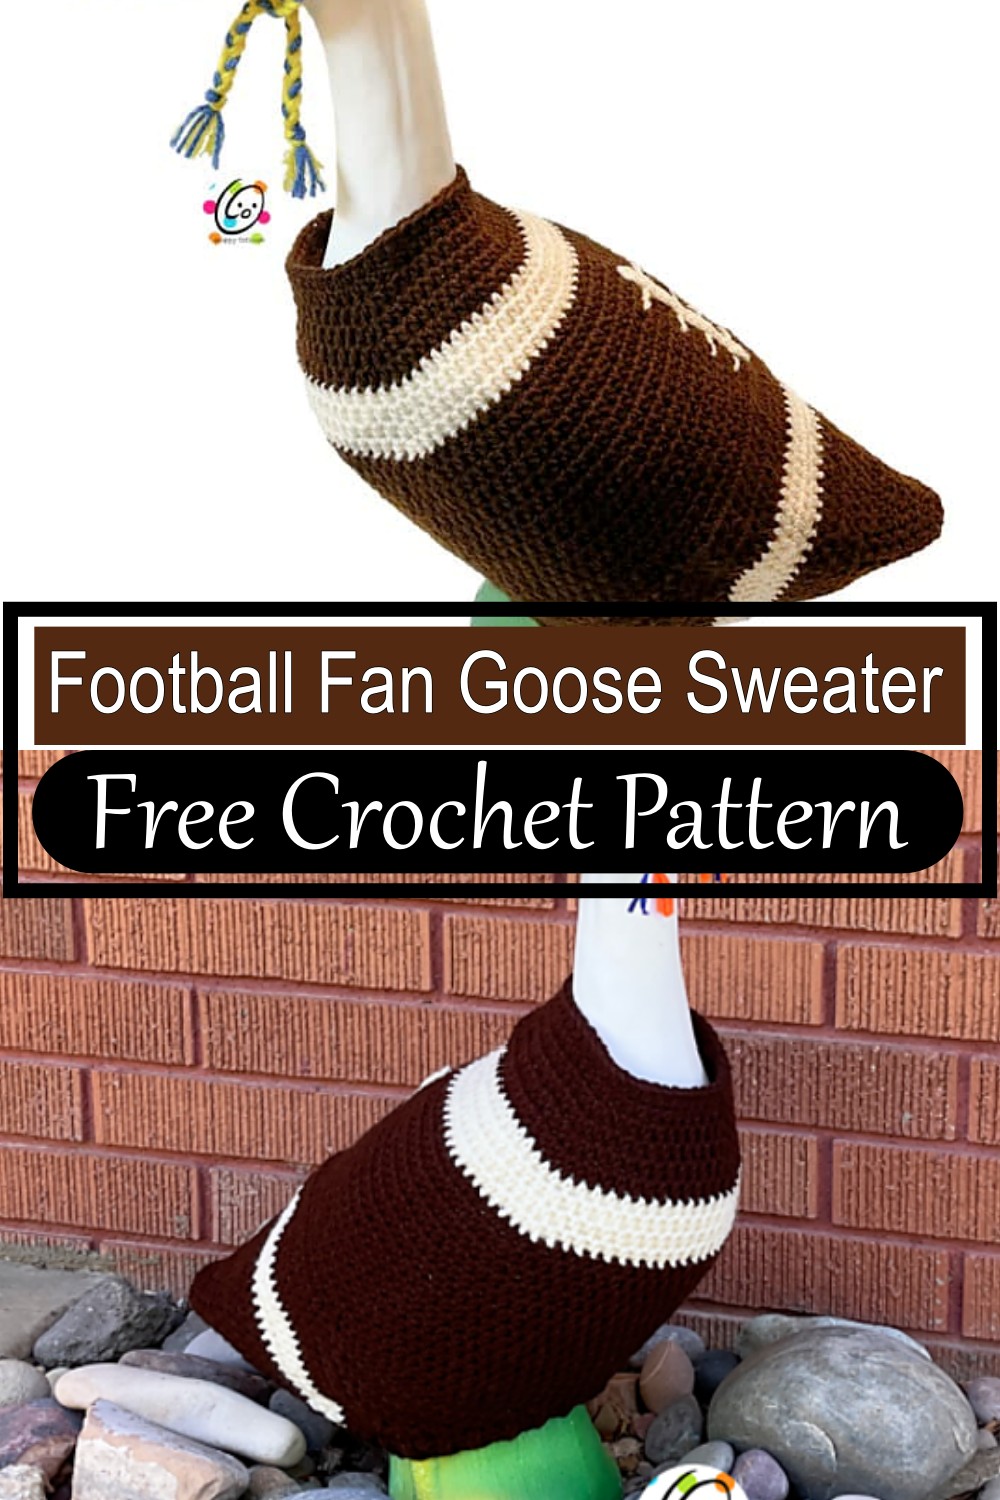 Football Fan Goose Sweater